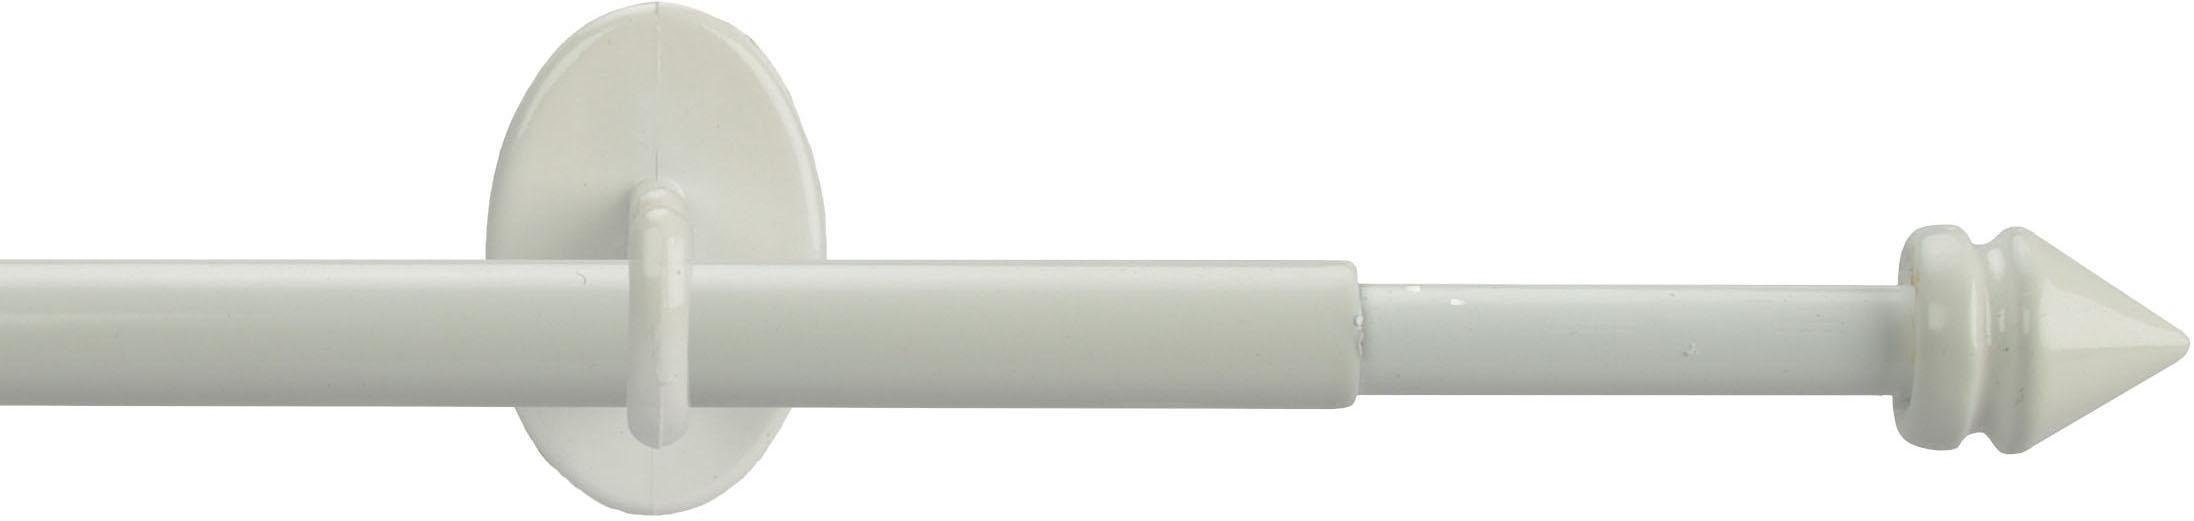 Scheibenstange Lyon, Liedeco, Ø 8 mm, 1-läufig, ausziehbar, ohne Bohren, geklebt